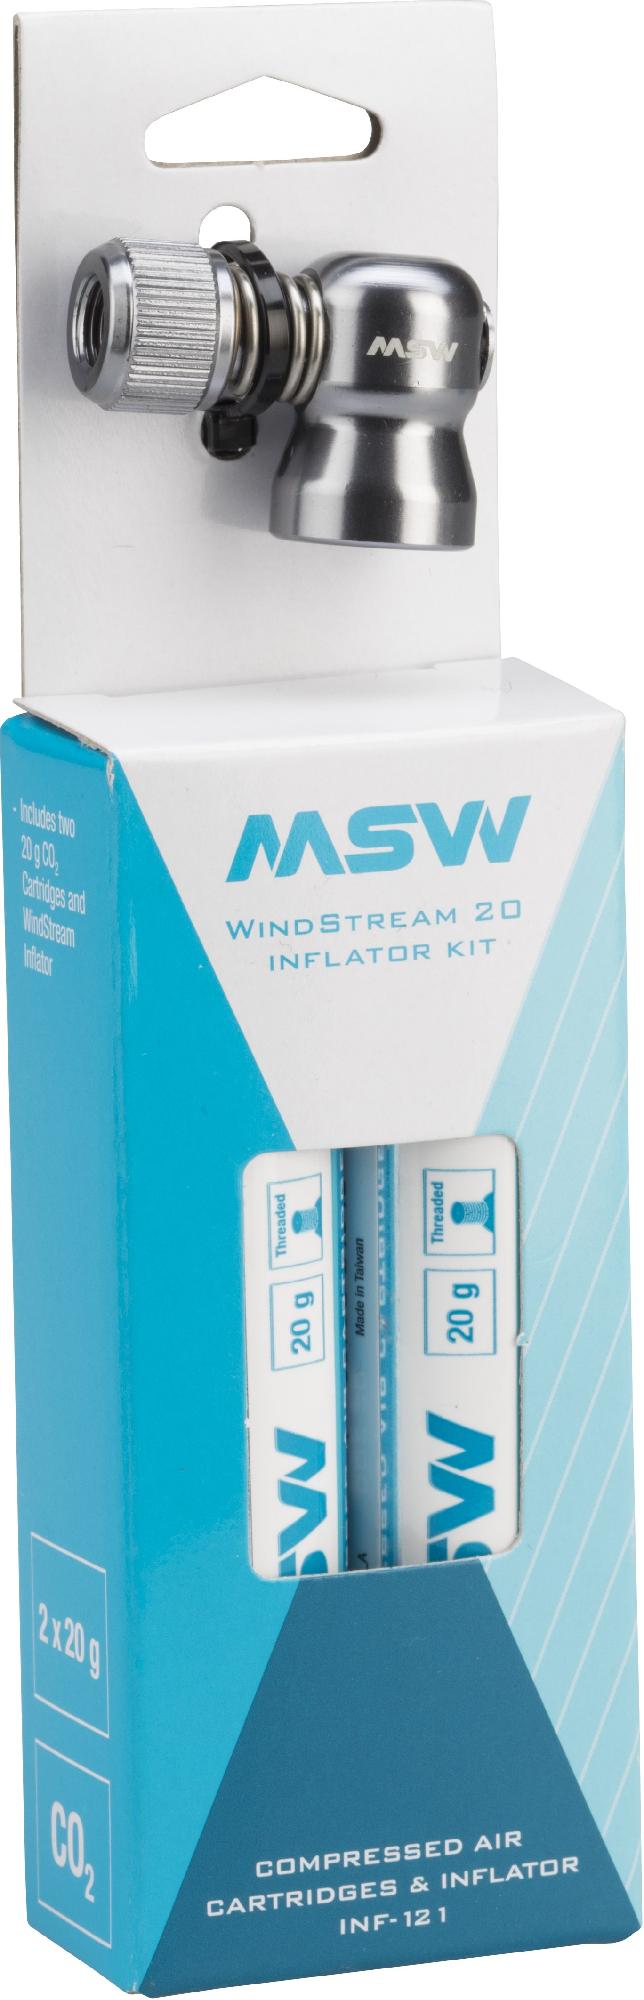 Комплект для надувания CO2 Windstream MSW лазерная головка co2 комплект фокусных линз линзы с зеркальным креплением диаметром 20 мм fl 50 8 63 5 мм для лазерного гравировального станка co2